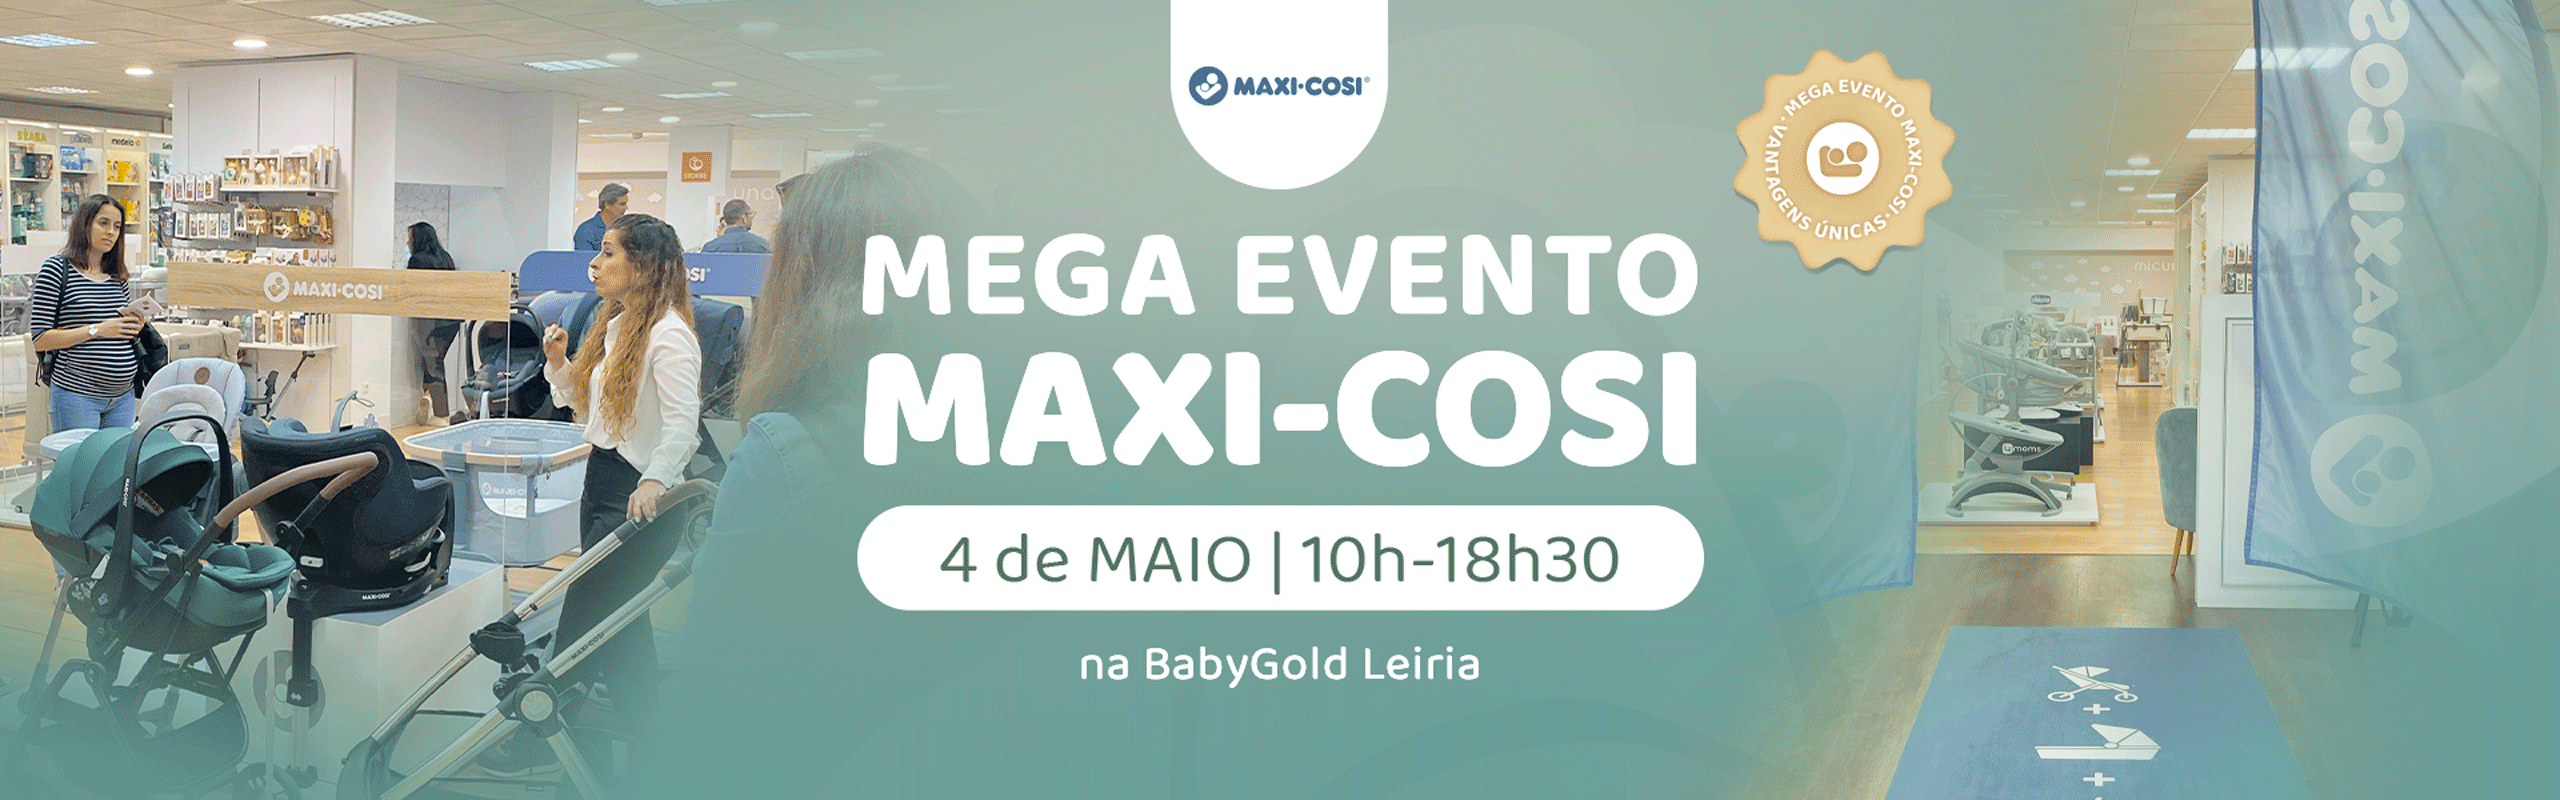 Evento Maxi-Cosi 4 de Maio na BabyGold